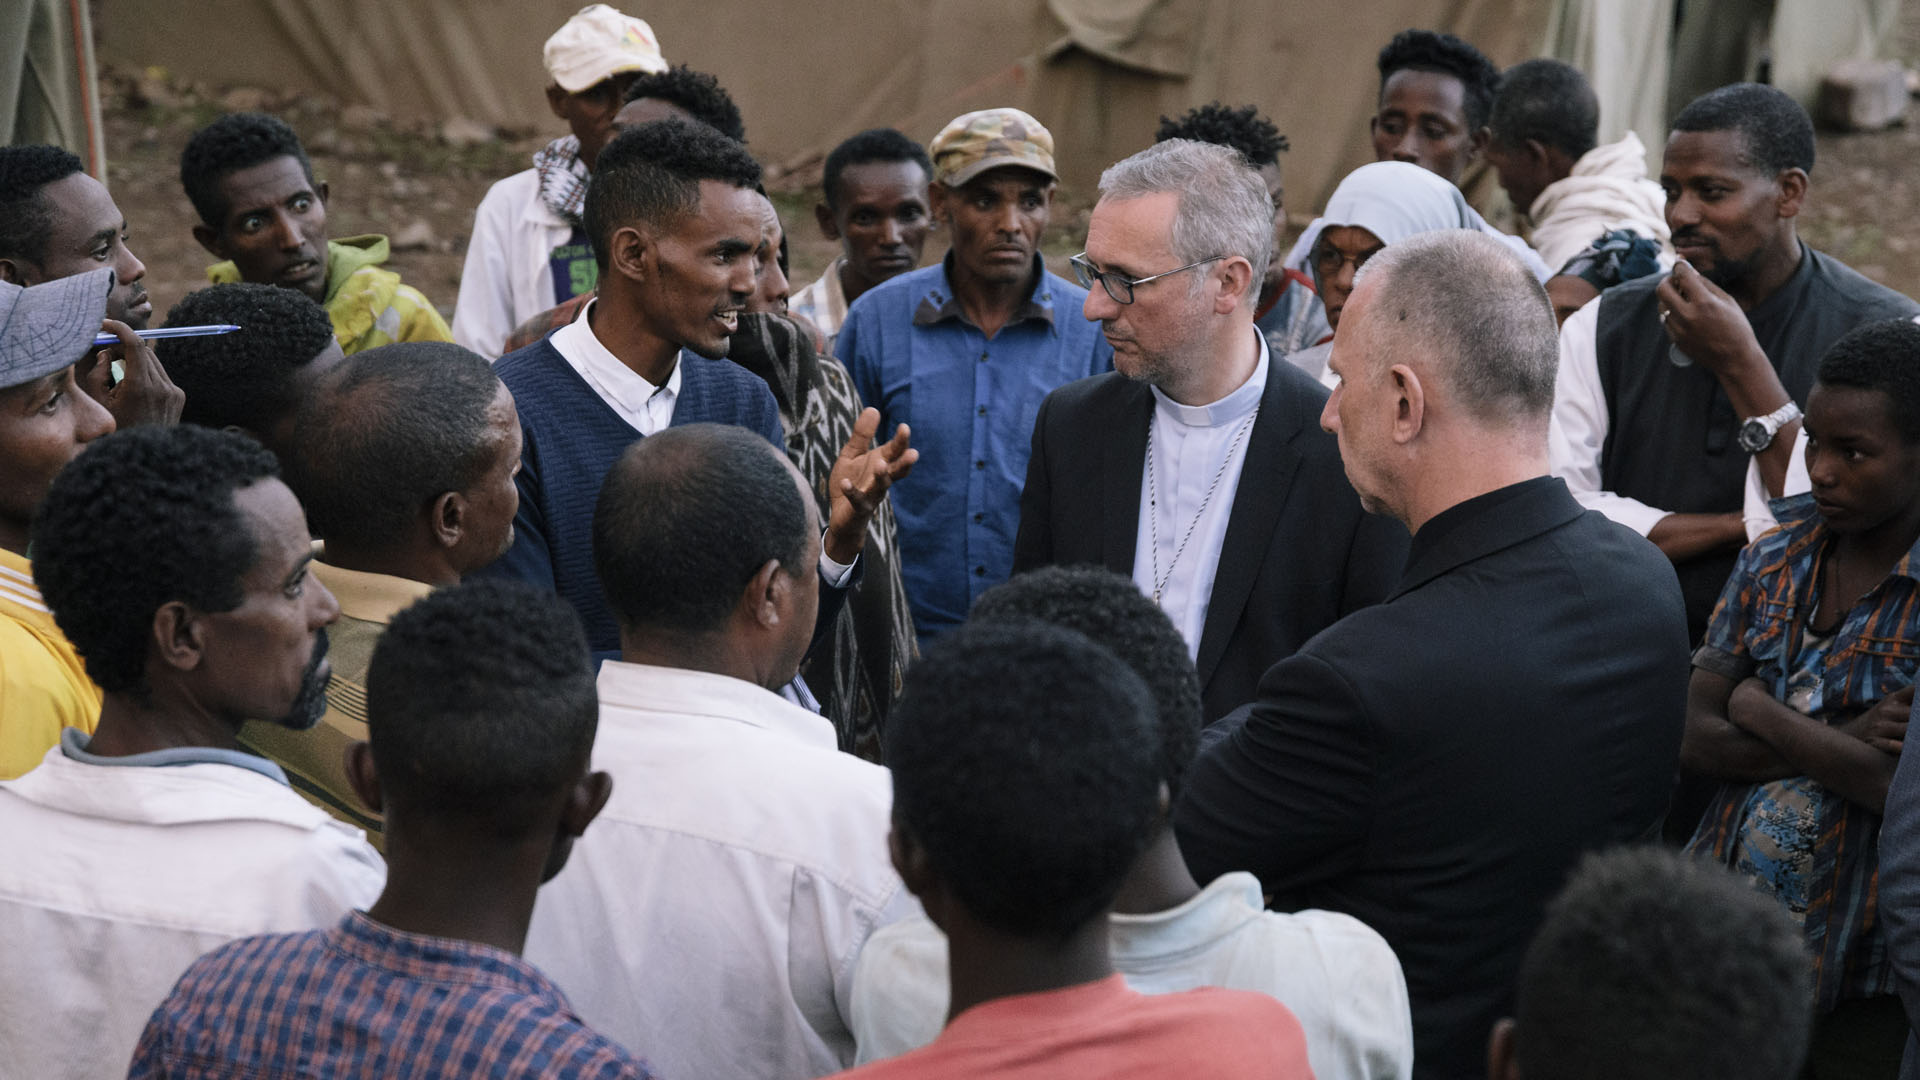 Erzbischof Heße besuchte die Gemeinde St. Anne in der Nähe von Gondar, die äthiopische Binnenflüchtlinge in einem Zeltlager beherbergt